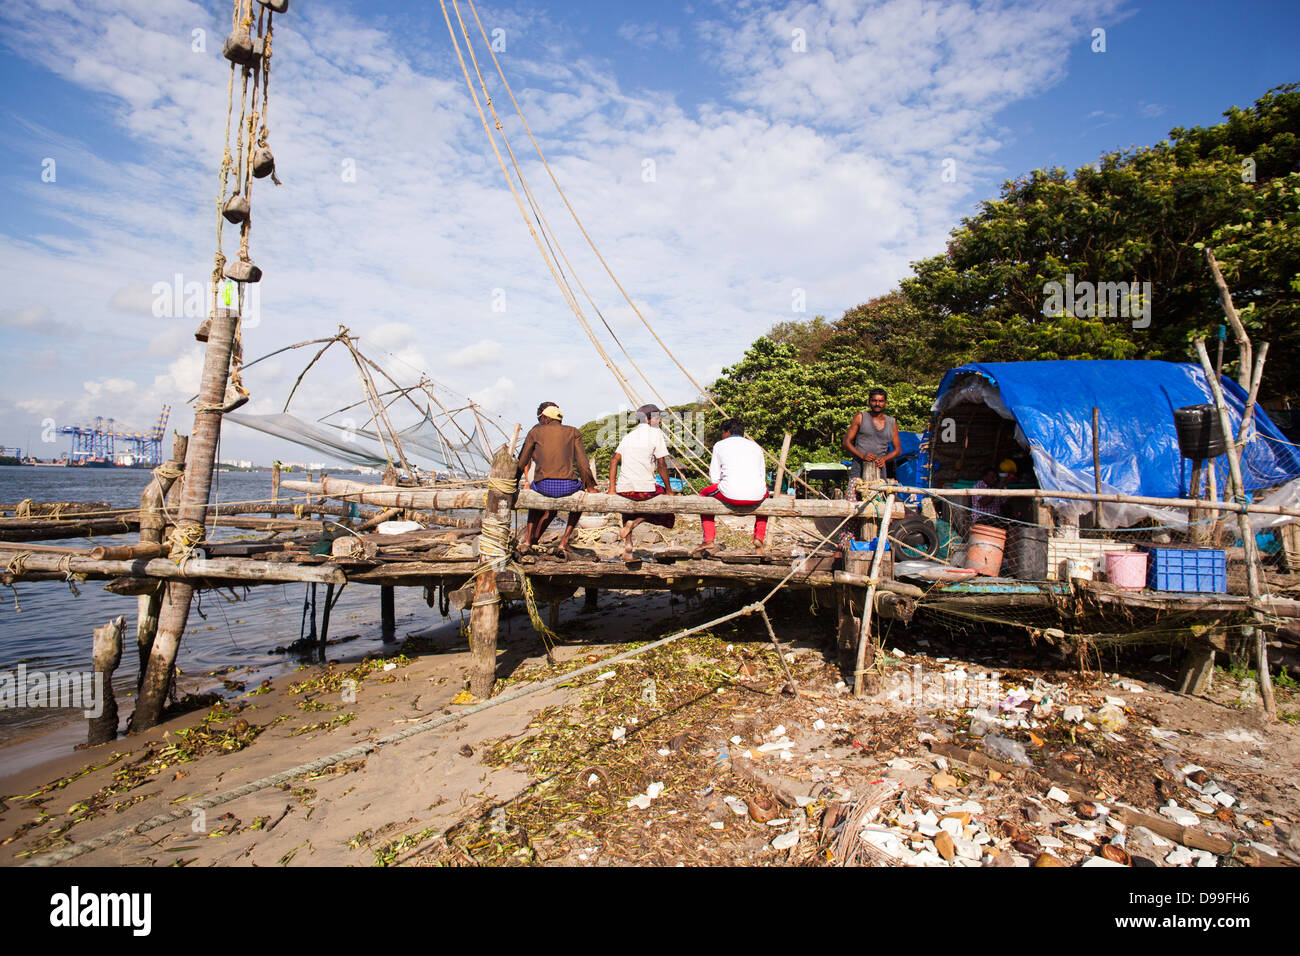 Los pescadores con redes de pesca chino en un puerto, Cochin, Kerala, India Foto de stock